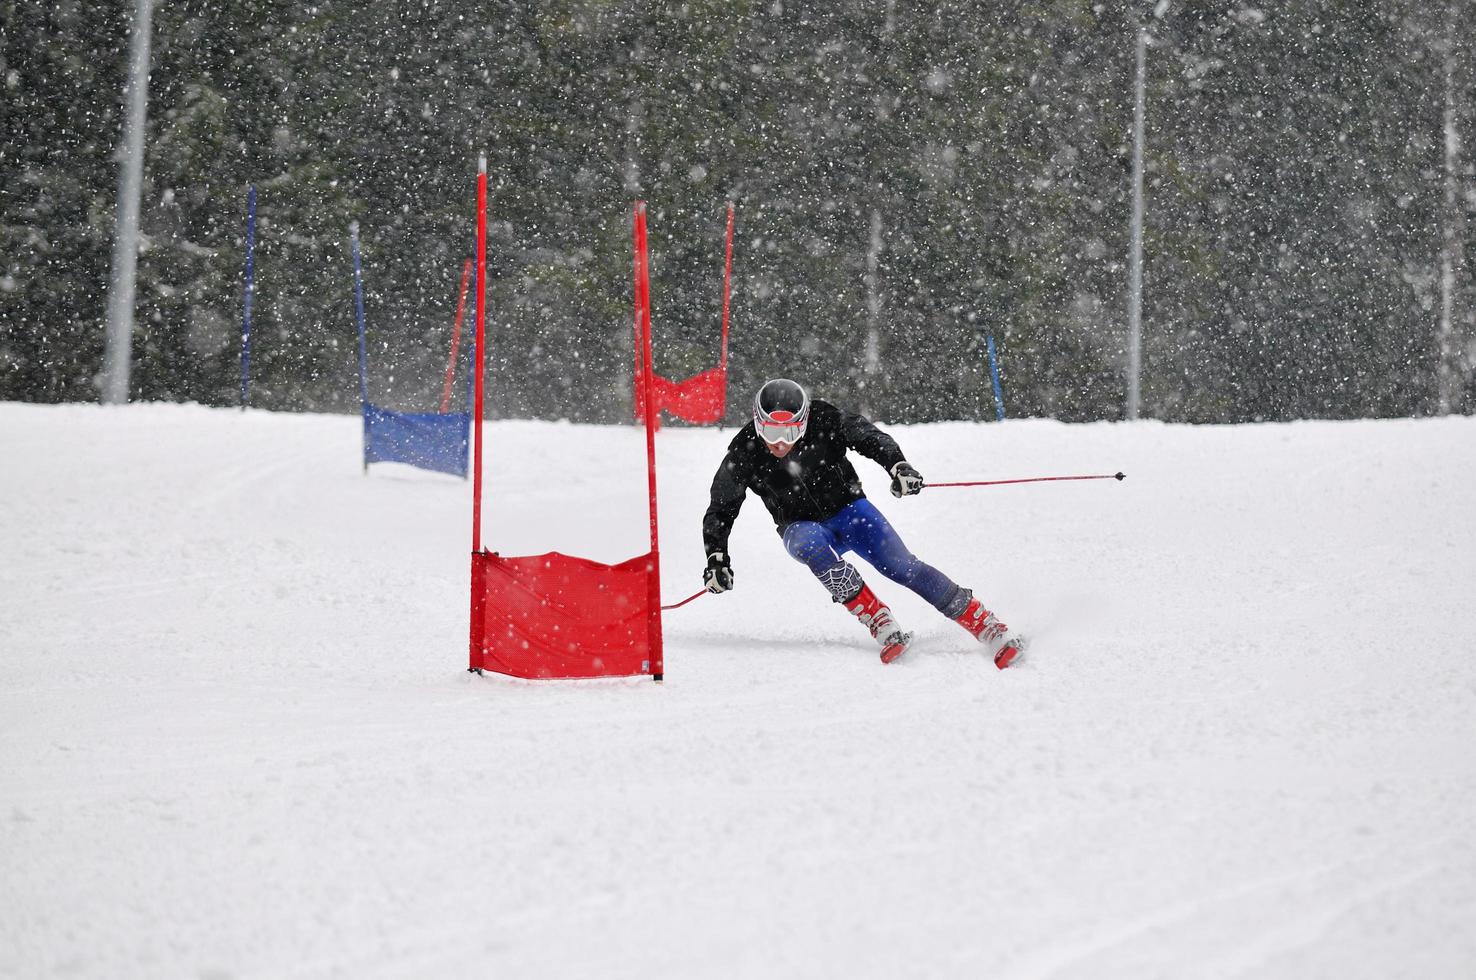 ski race view photo